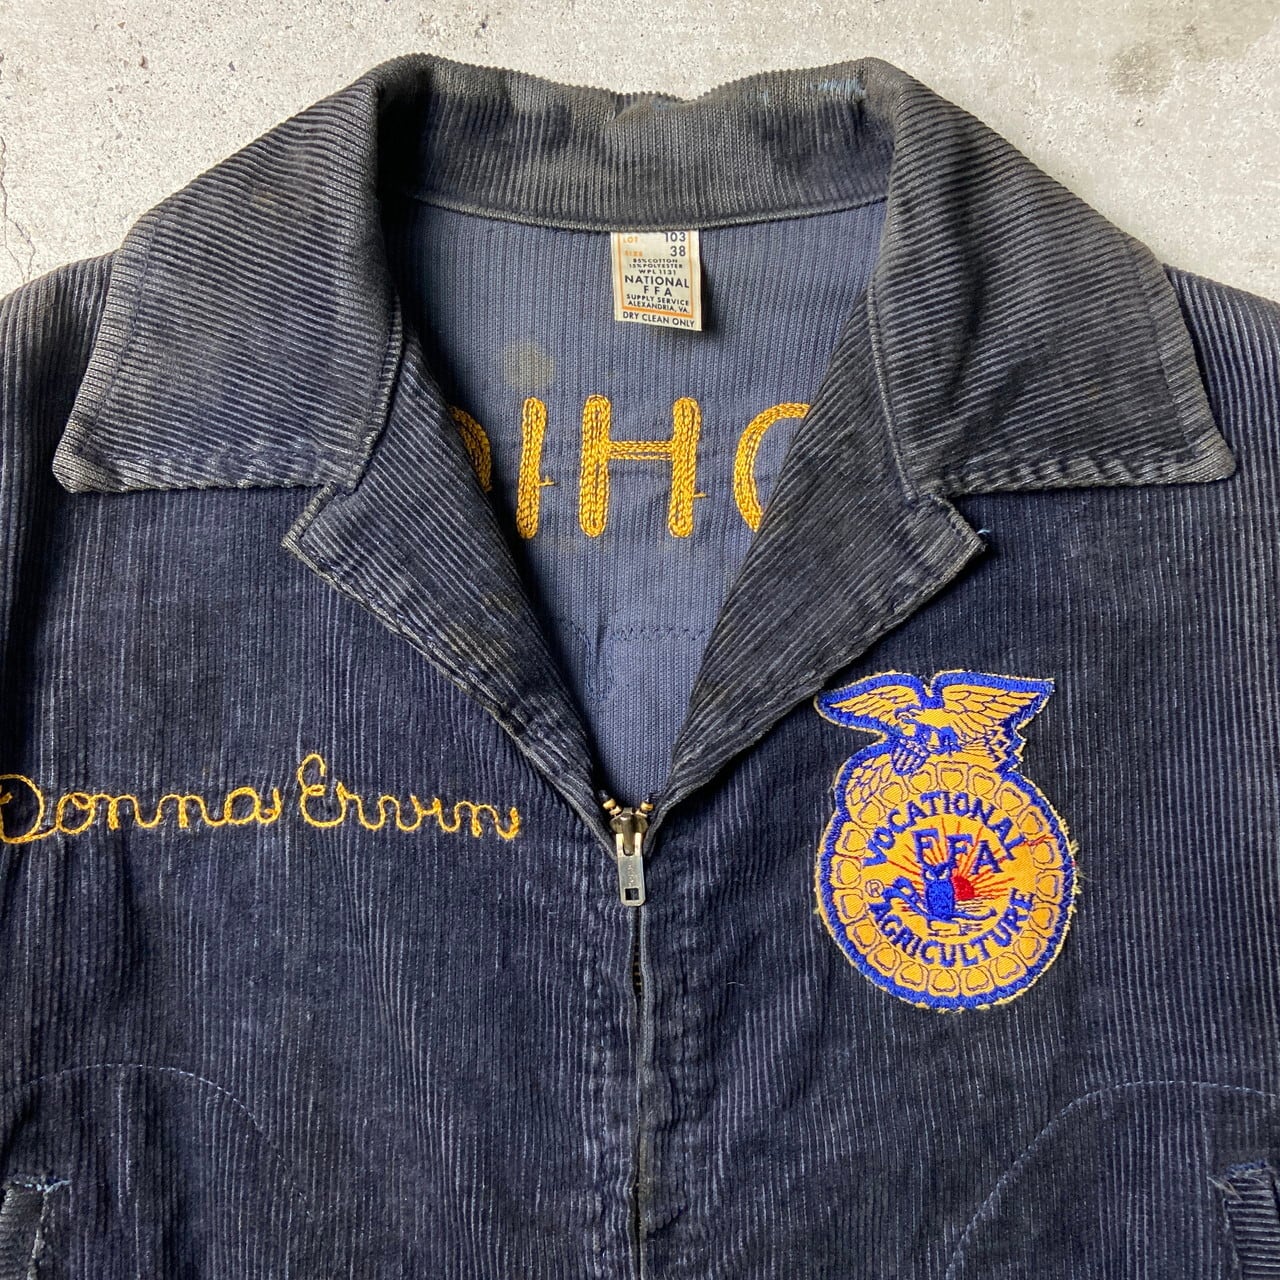 60〜70年代 FFA アメリカ国立農業学校 ファーマーズジャケット 38 ...